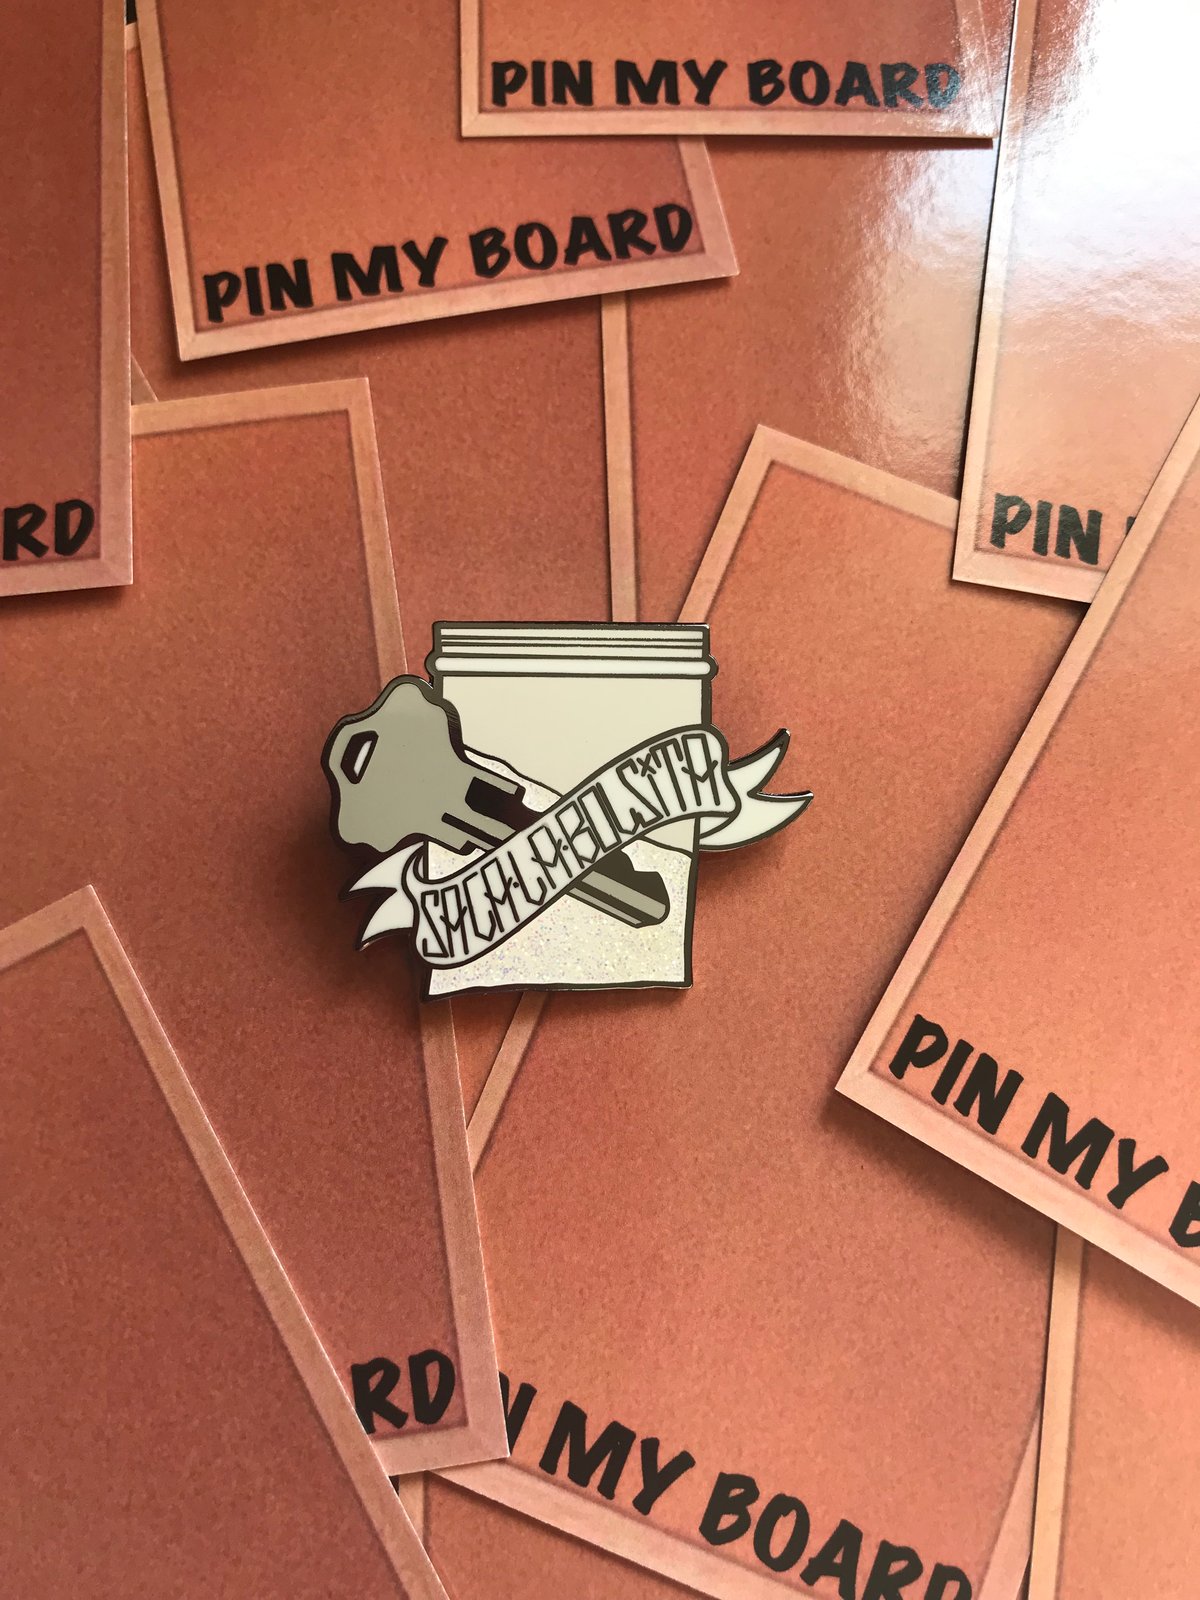 Pin on My board